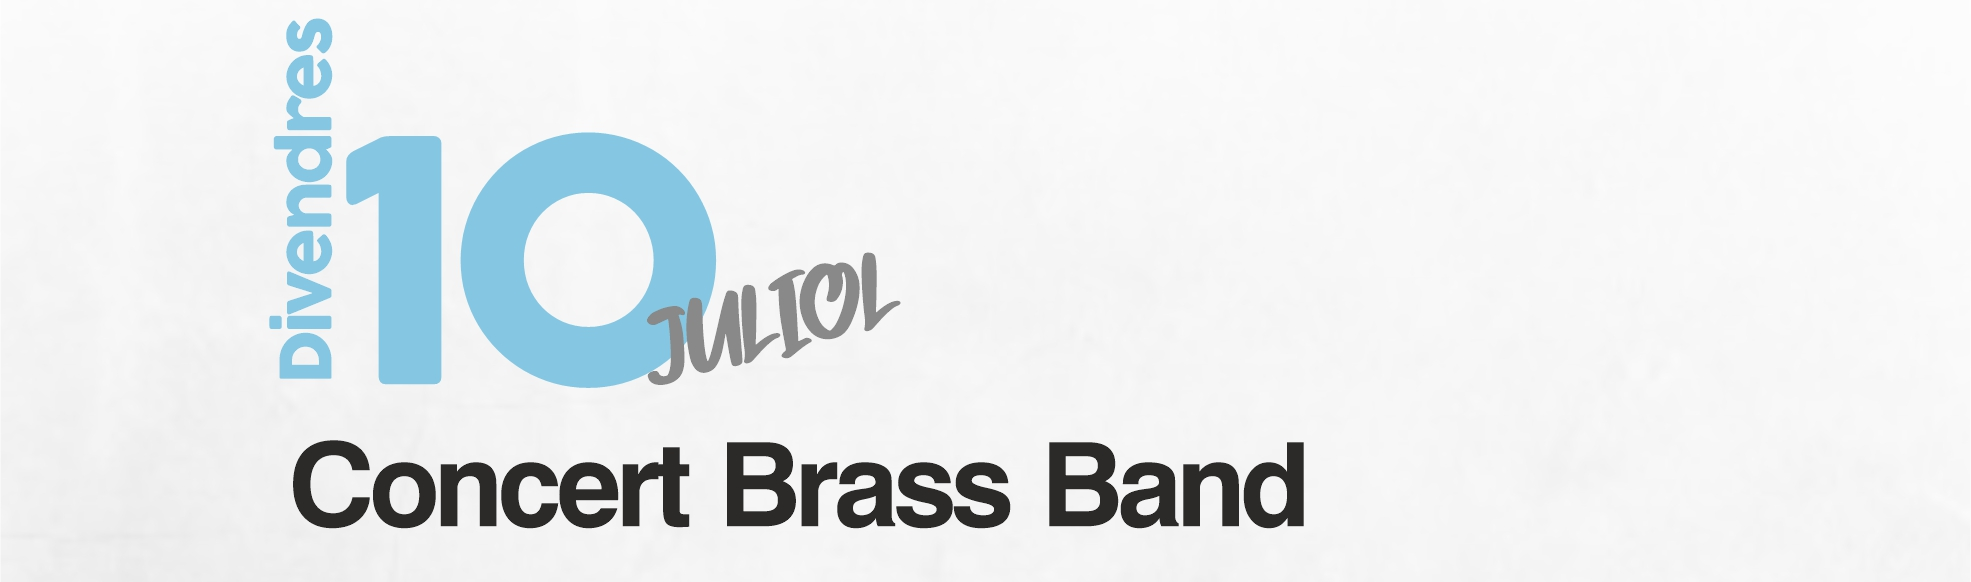 brass band concert